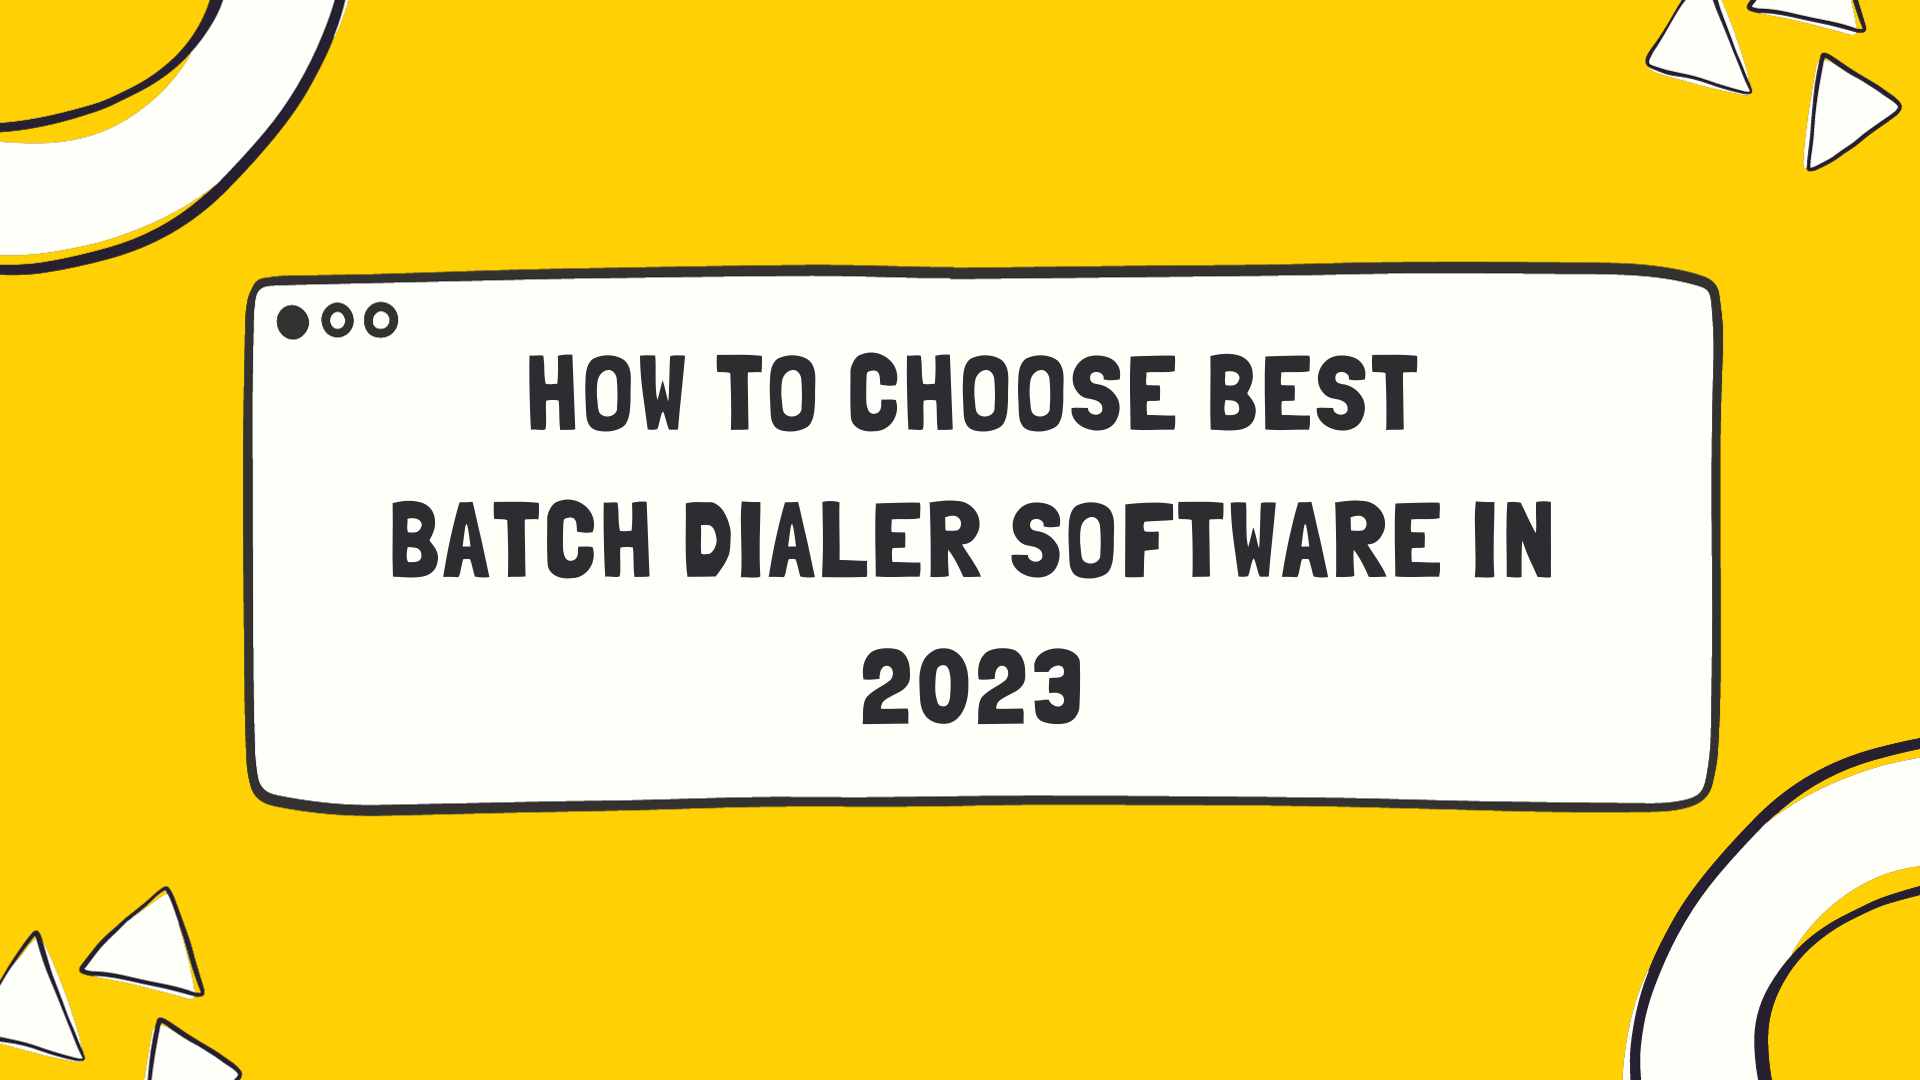 Batch Dialer Software